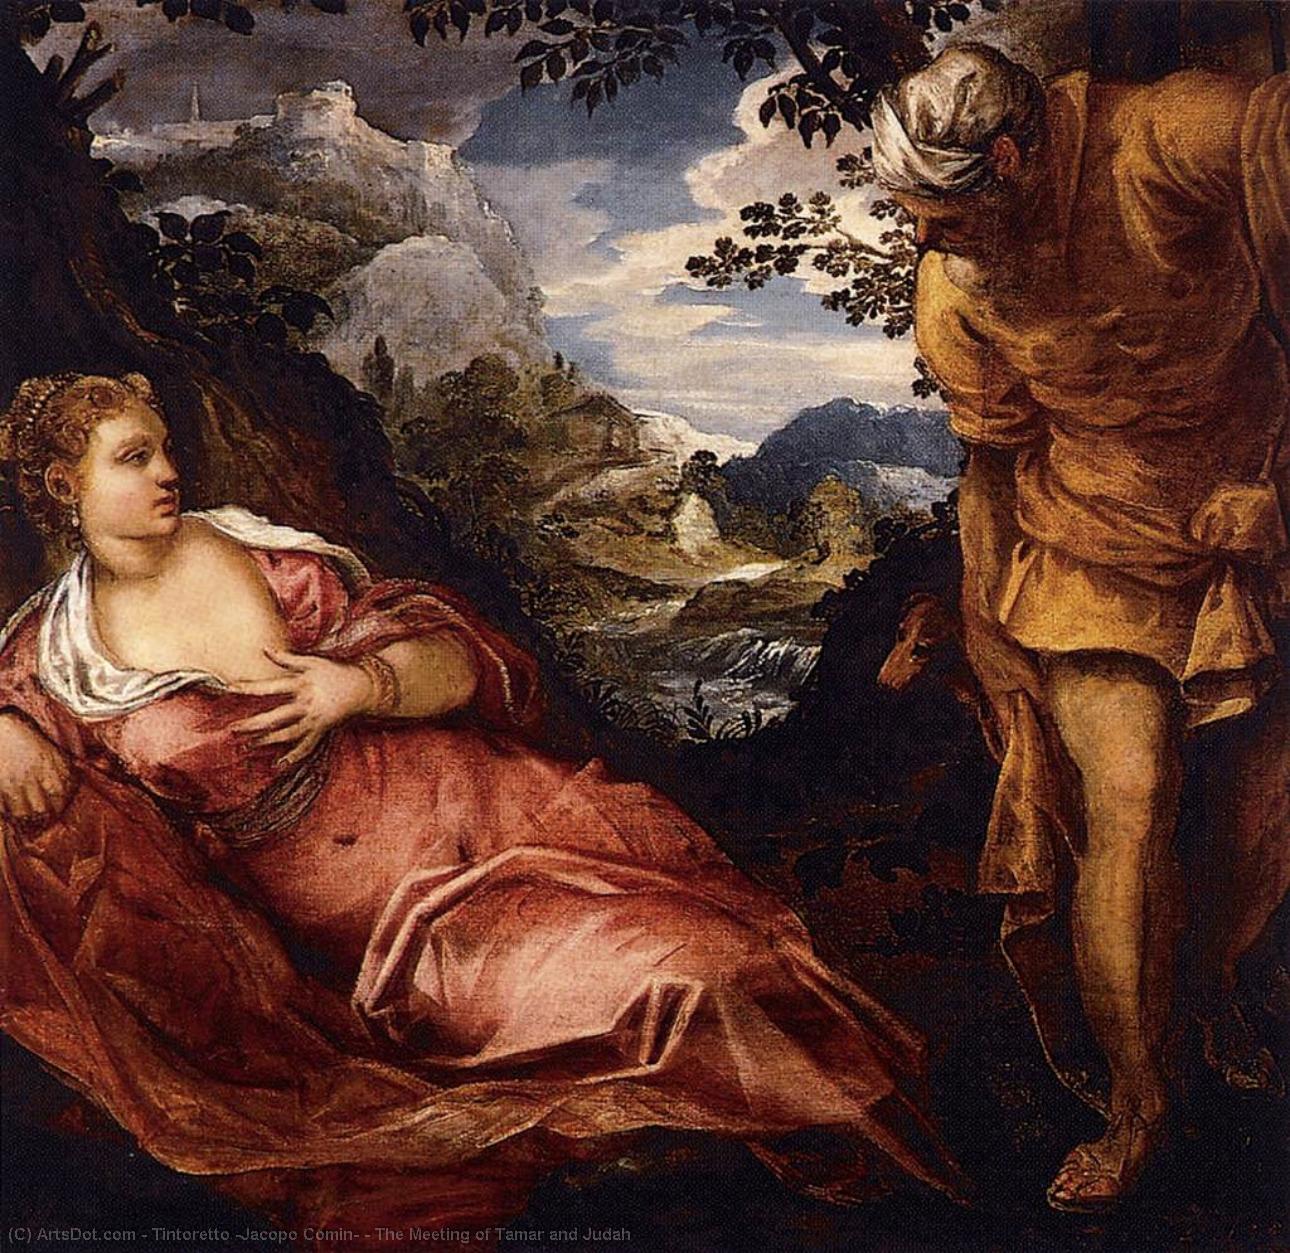 WikiOO.org – 美術百科全書 - 繪畫，作品 Tintoretto (Jacopo Comin) - 会议 的  添马舰  和  犹大